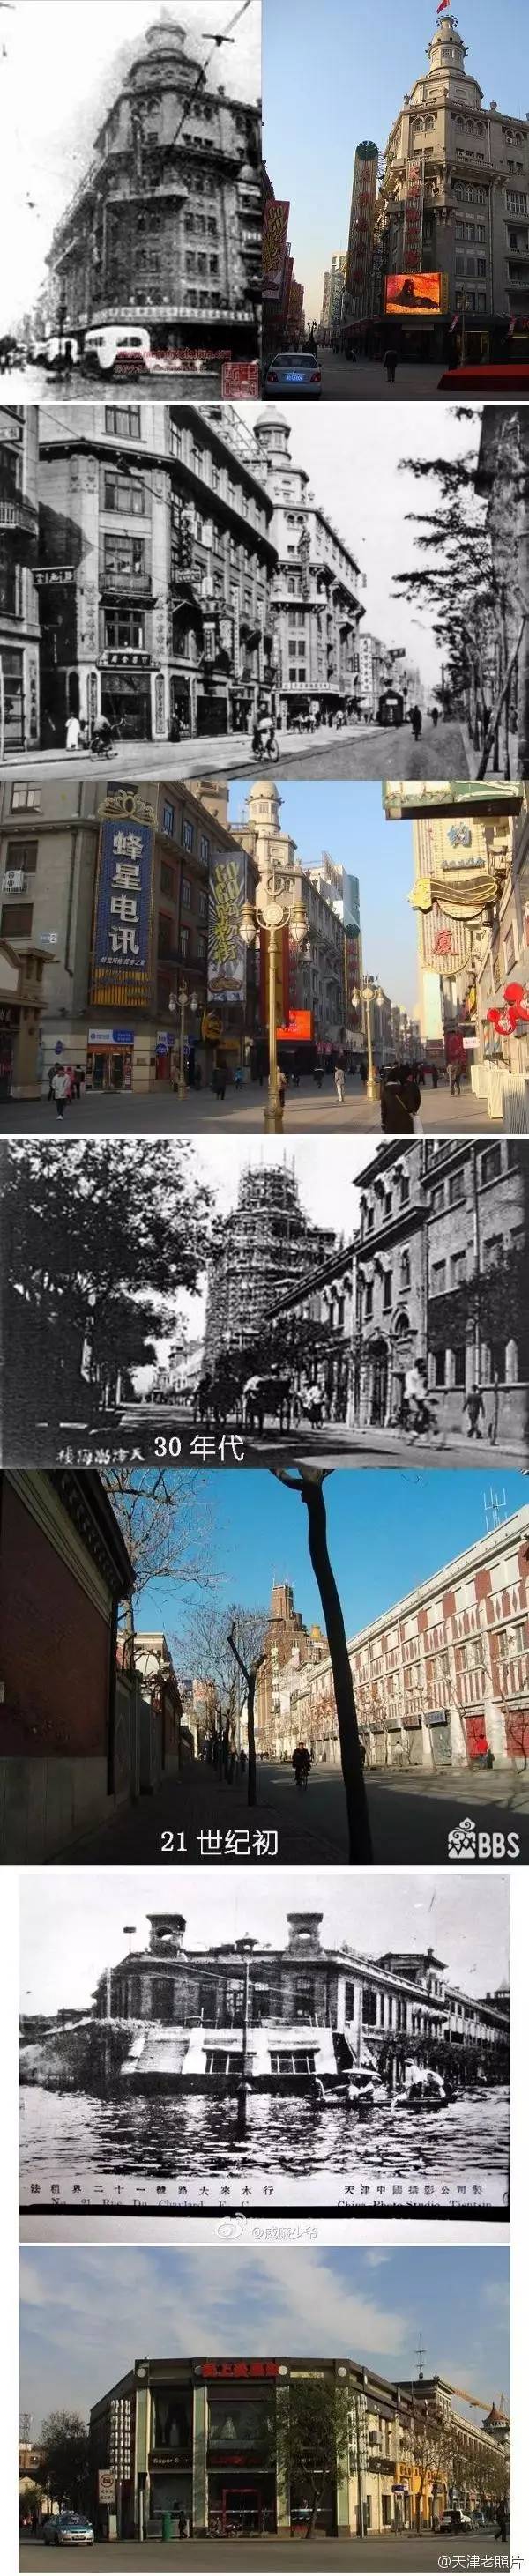 天津新老照片对比图片